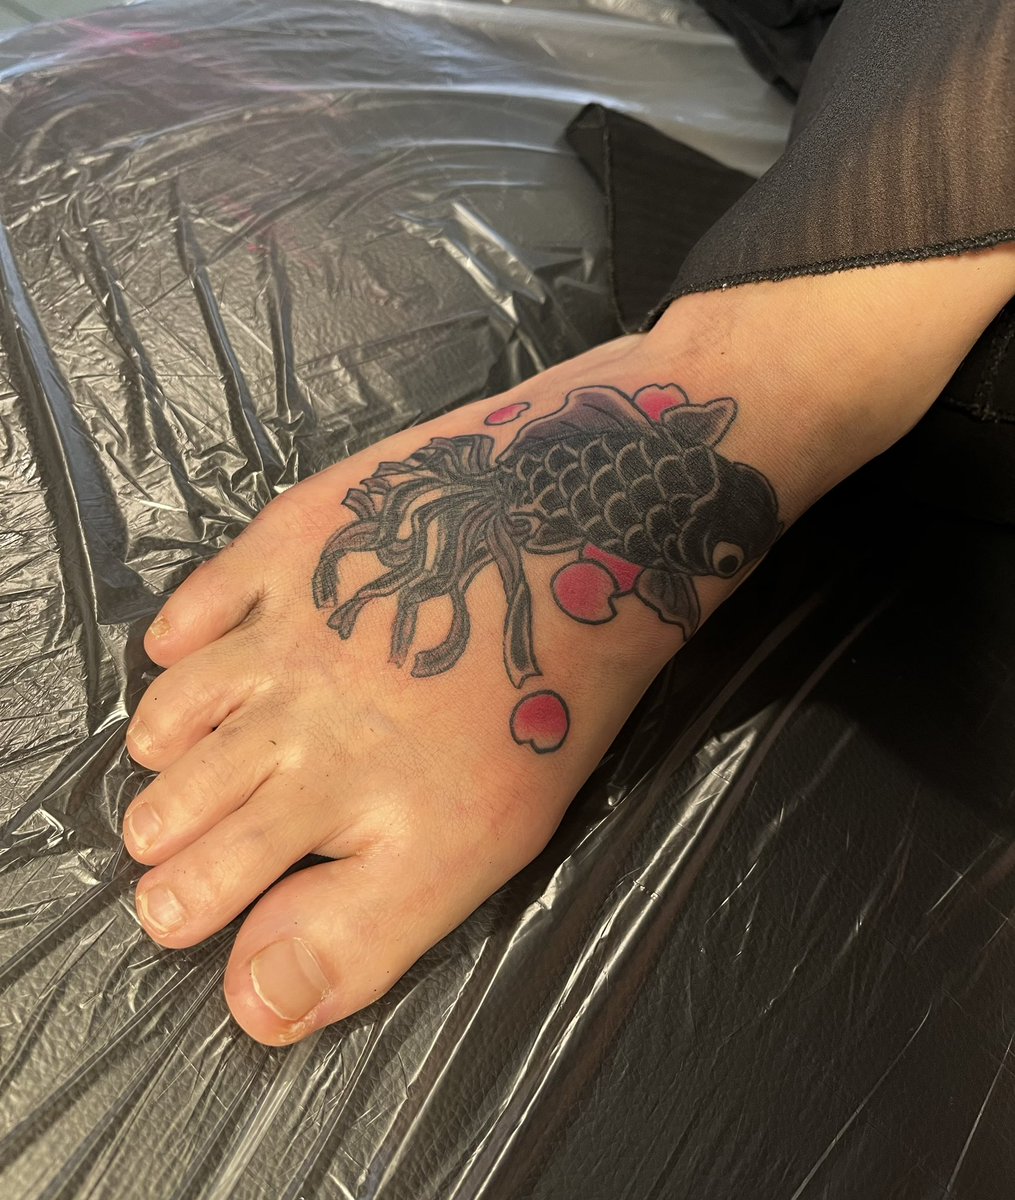 デメキン

#タトゥーモニター #タトゥーモニター募集 #タトゥーモニター東京 #タトゥー #和彫り #刺青 #刺青女子 #カバーアップタトゥー #tattoo #japanesetattoo #tattootokyo #tattoostudiotokyo